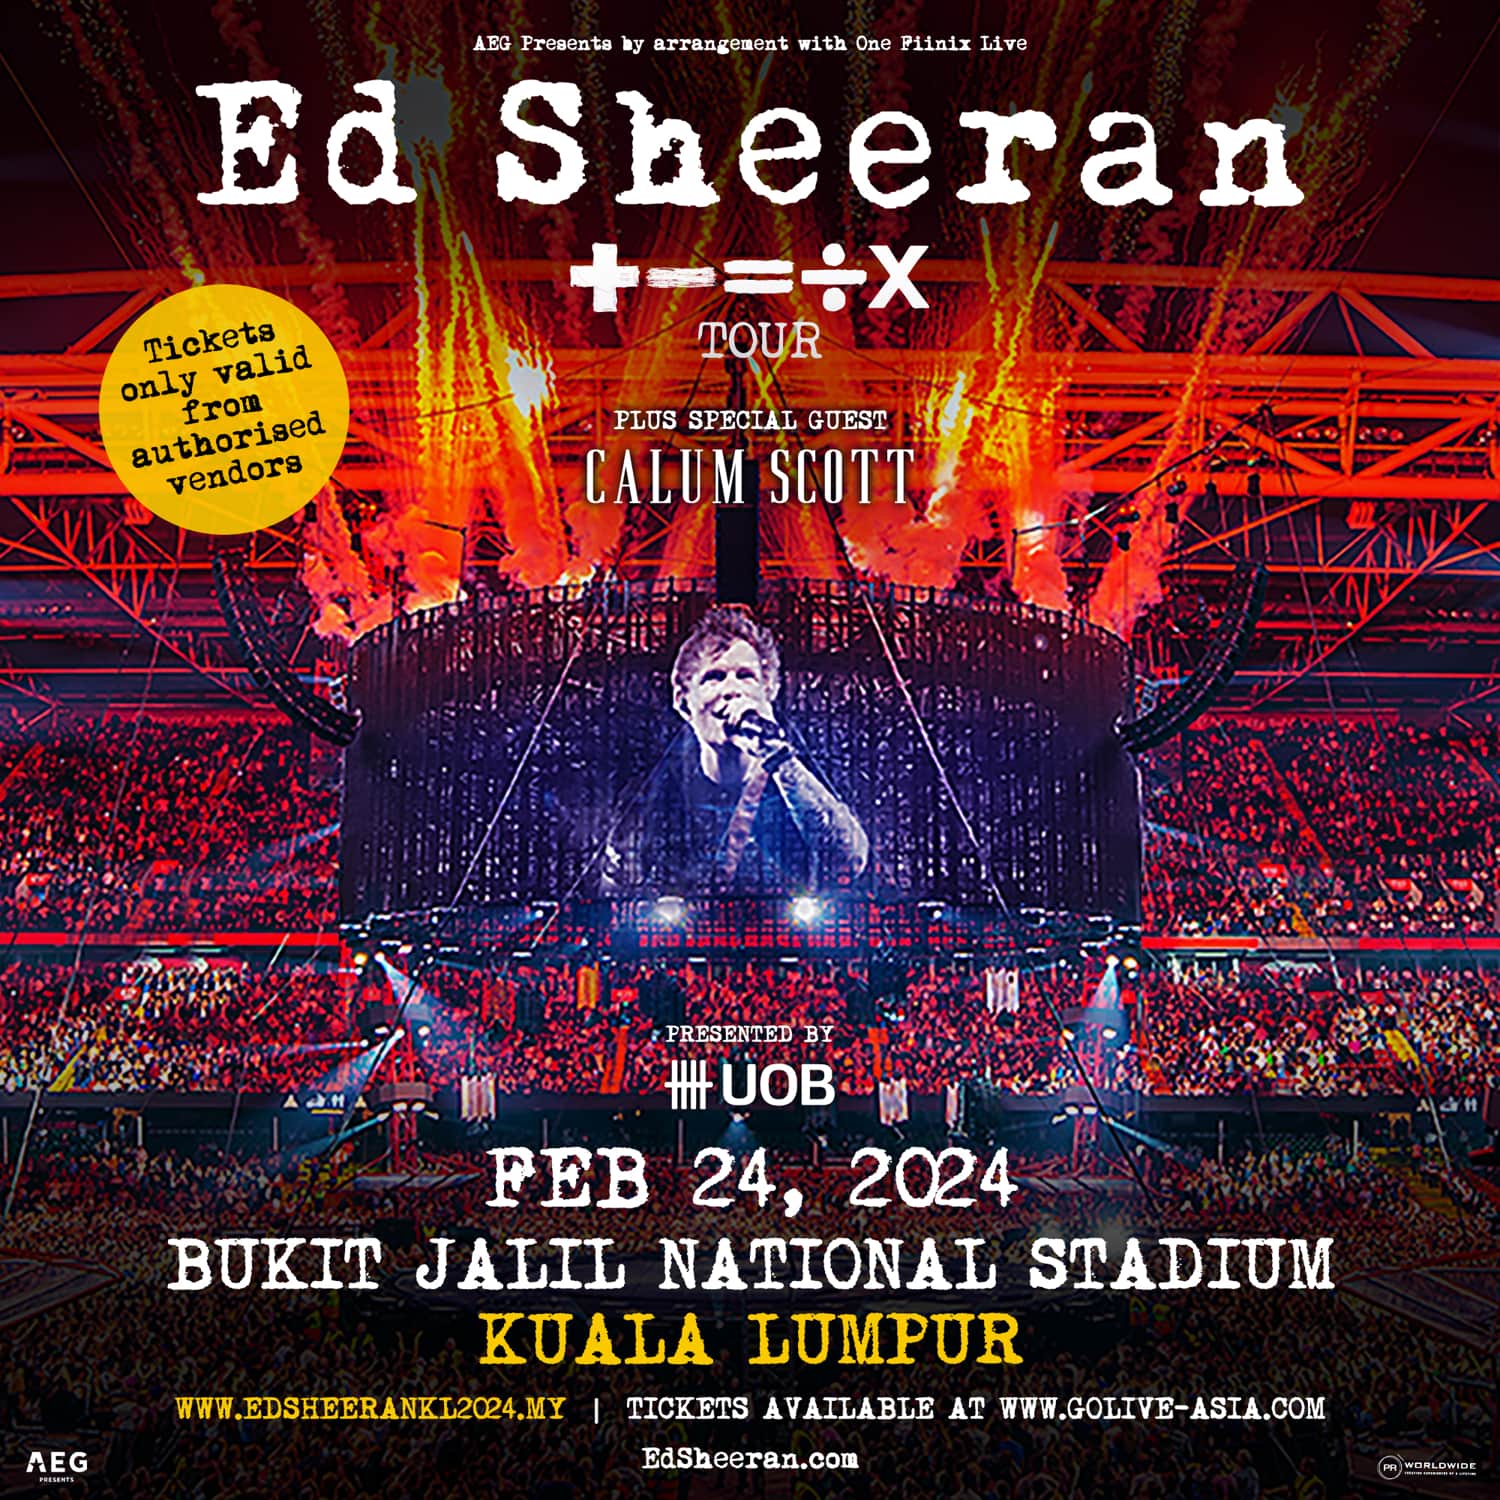 Ed Sheeran concert in Malaysia - poster